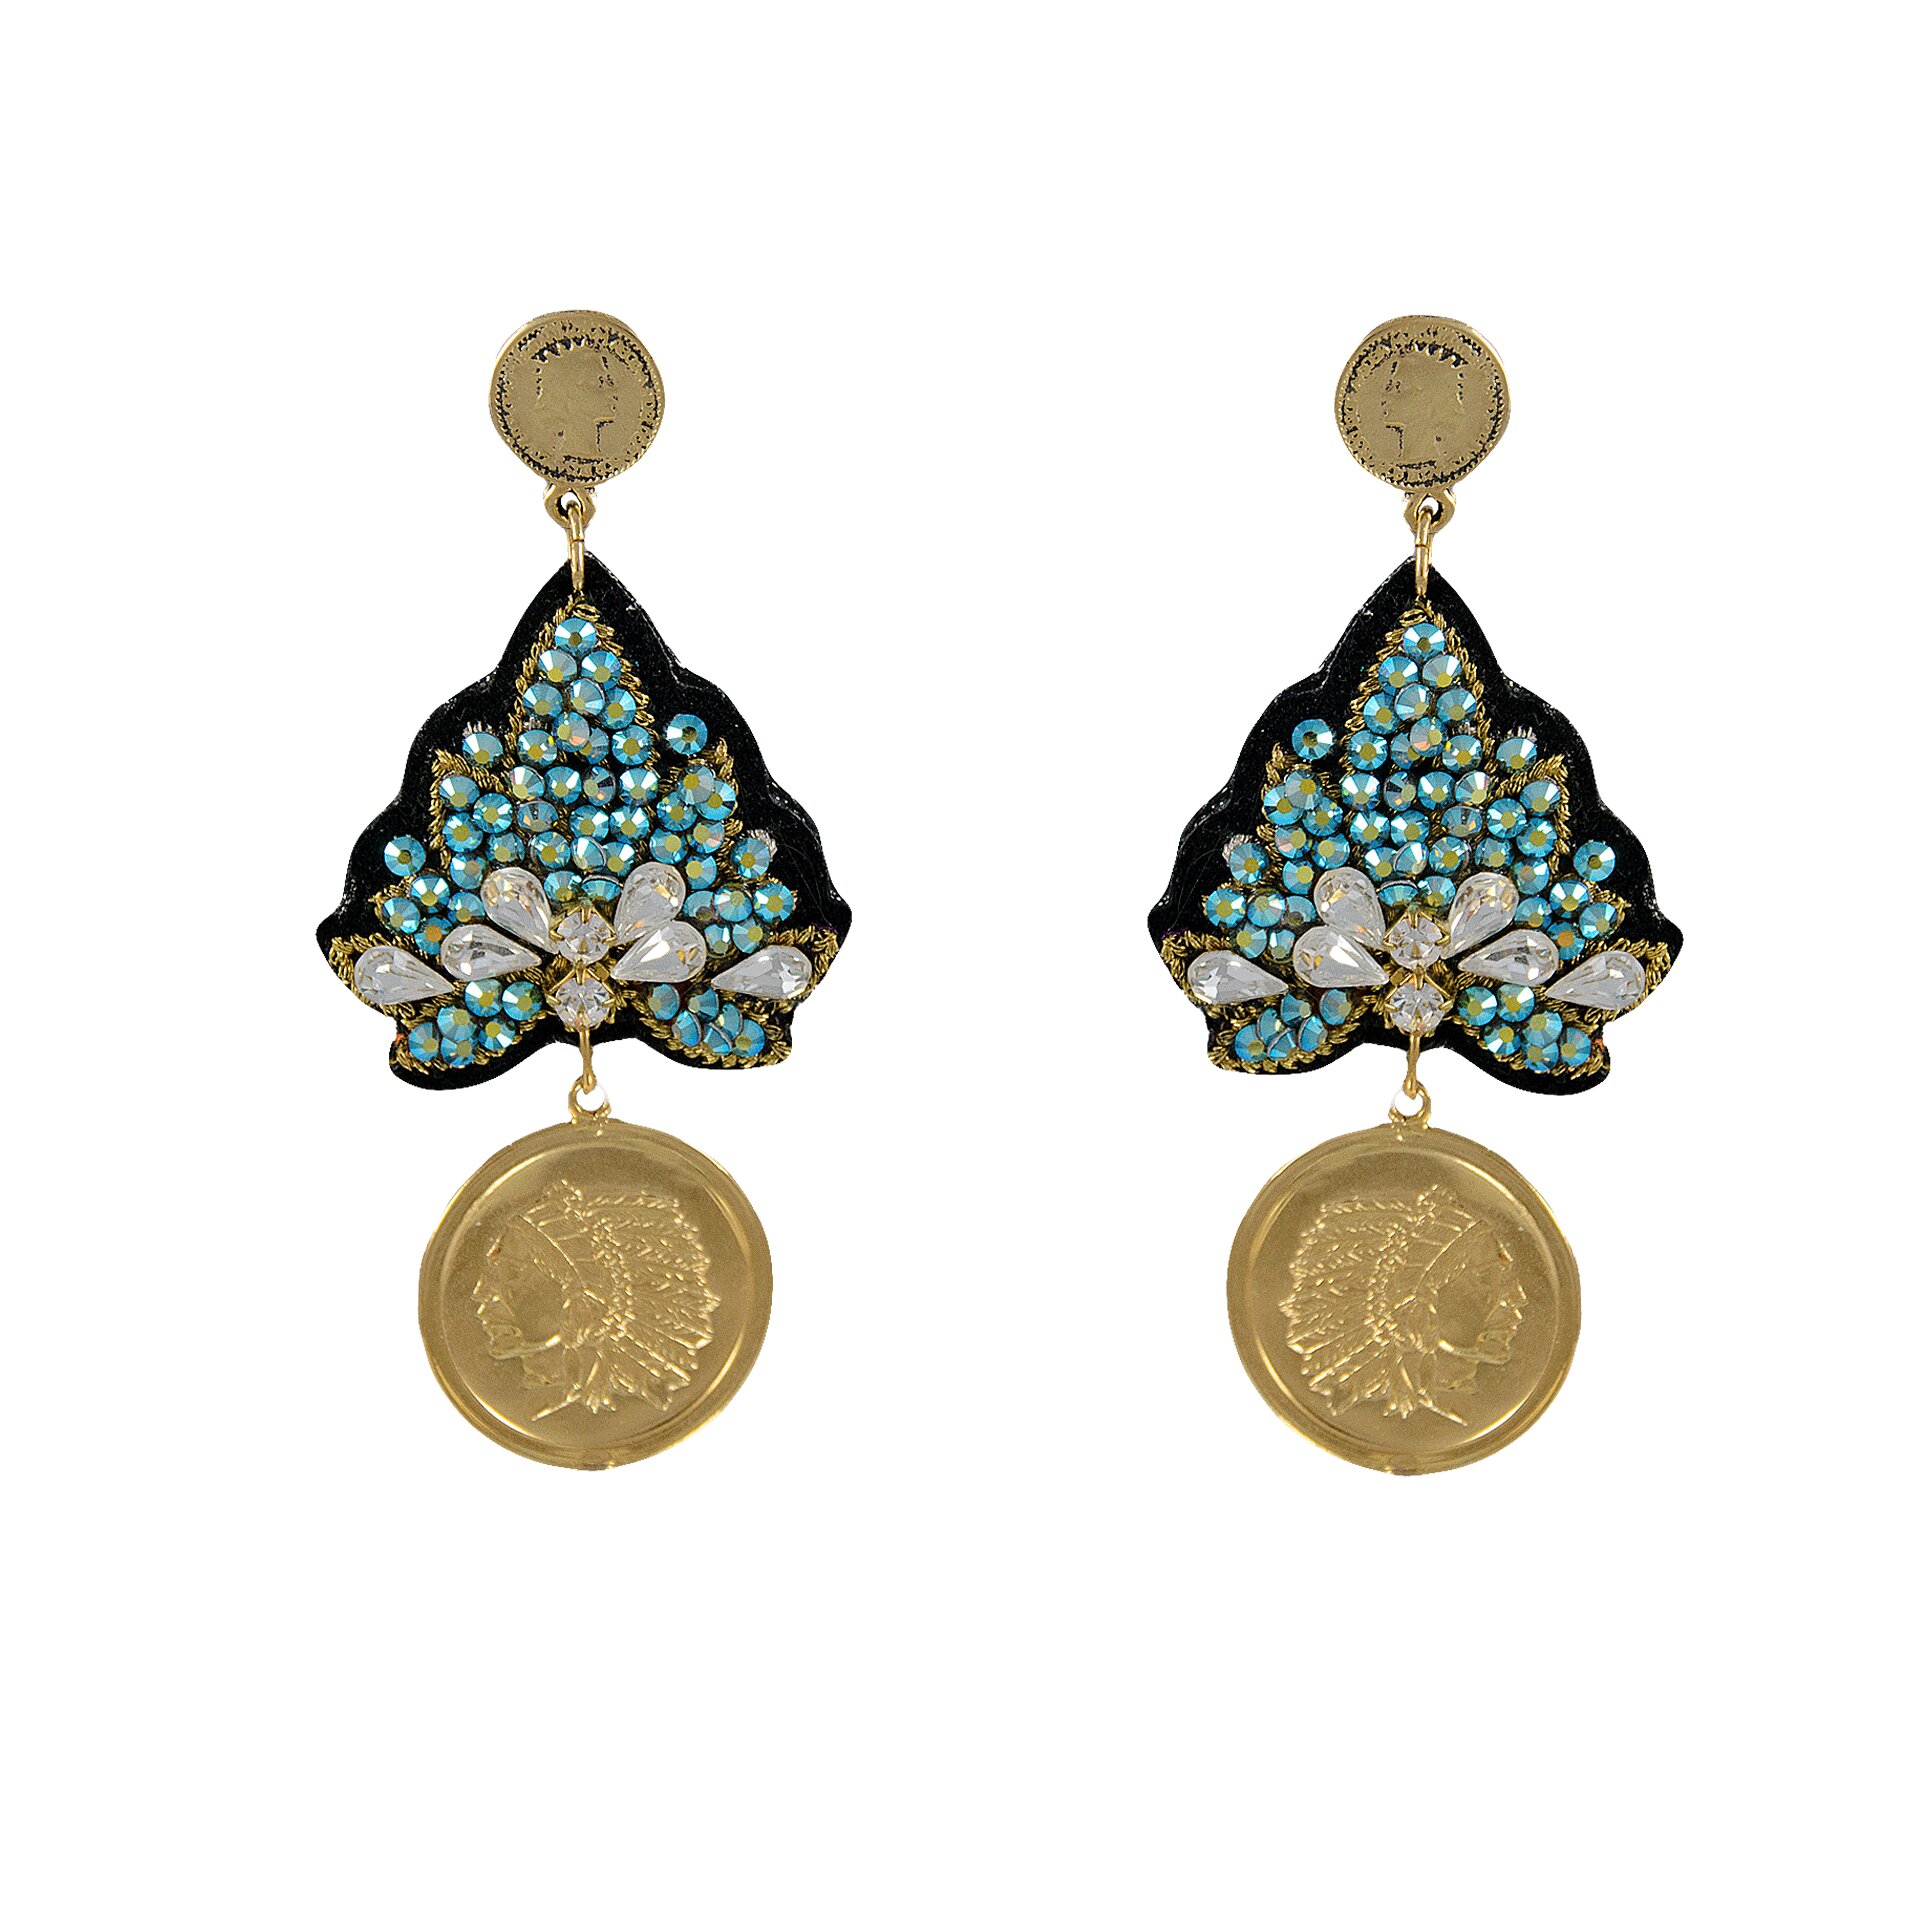 LINDA'S DREAM orecchini blu indiano con elementi in oro